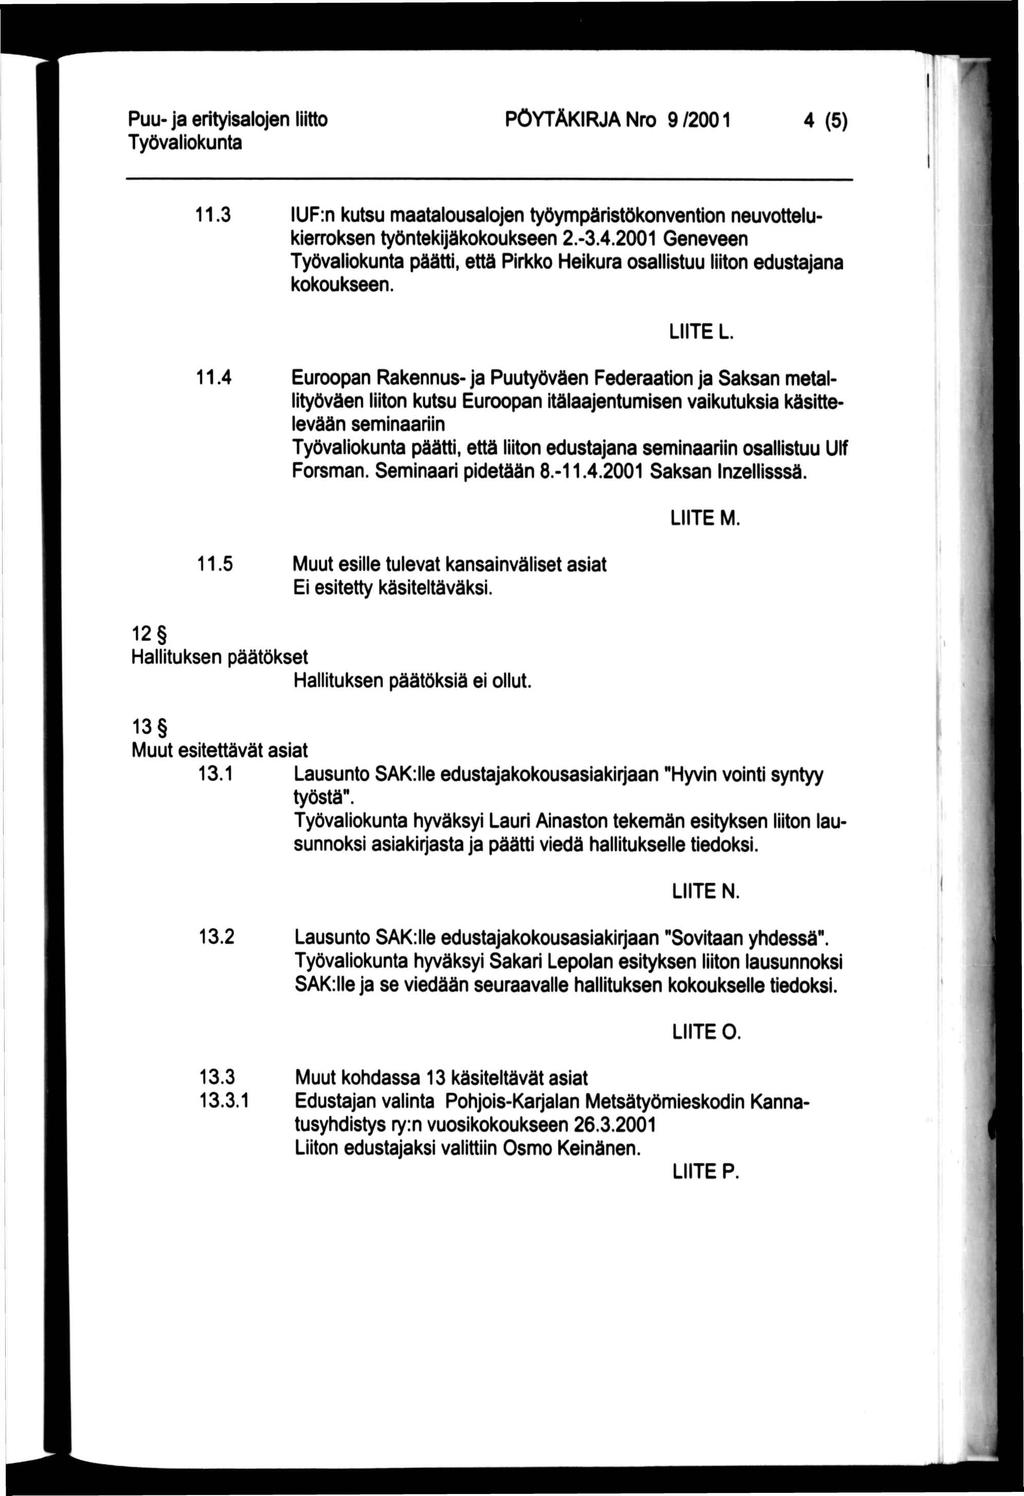 PÖYTÄKIRJA Nro 9/2001 4 (5) 11.3 IUF:n kutsu maatalousalojen työympäristökonvention neuvottelukierroksen työntekijäkokoukseen 2.-3.4.2001 Geneveen päätti, että Pirkko Heikura osallistuu liiton edustajana kokoukseen.